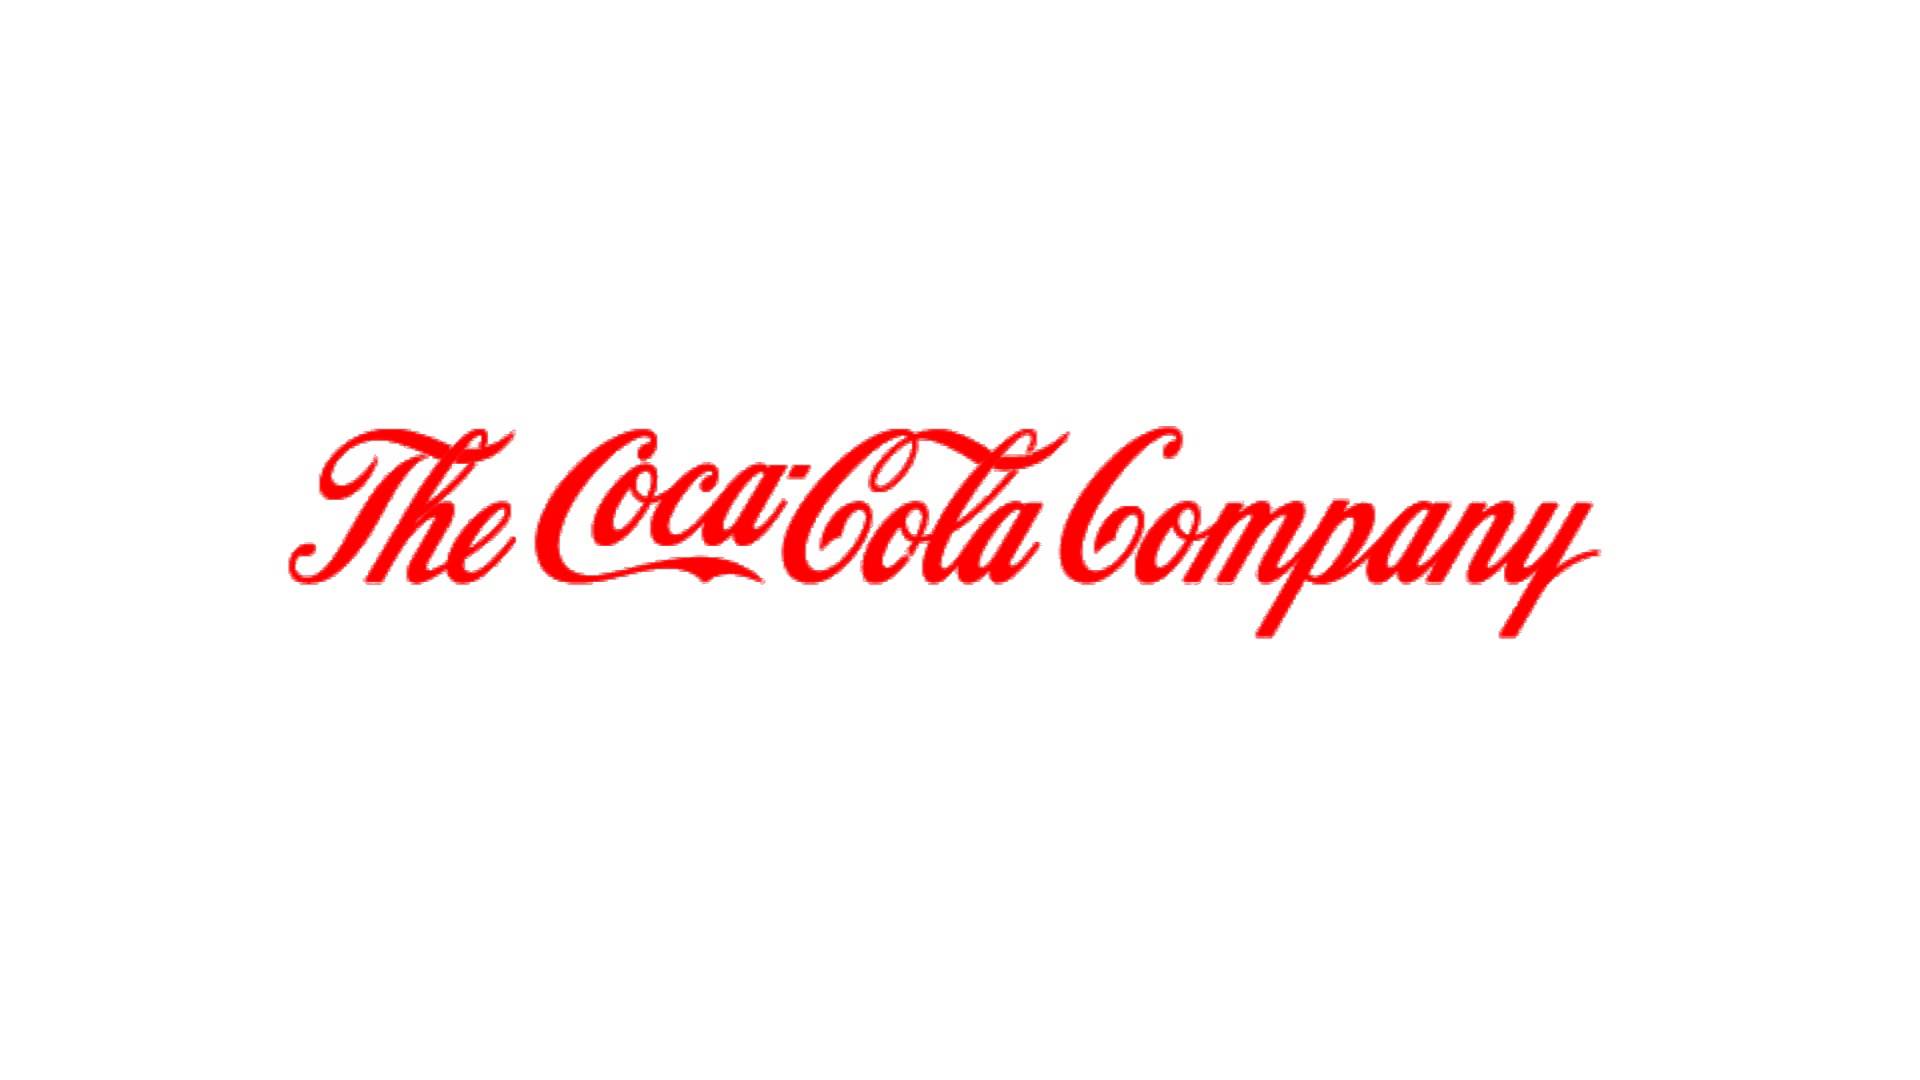 30. The Coca-Cola Company